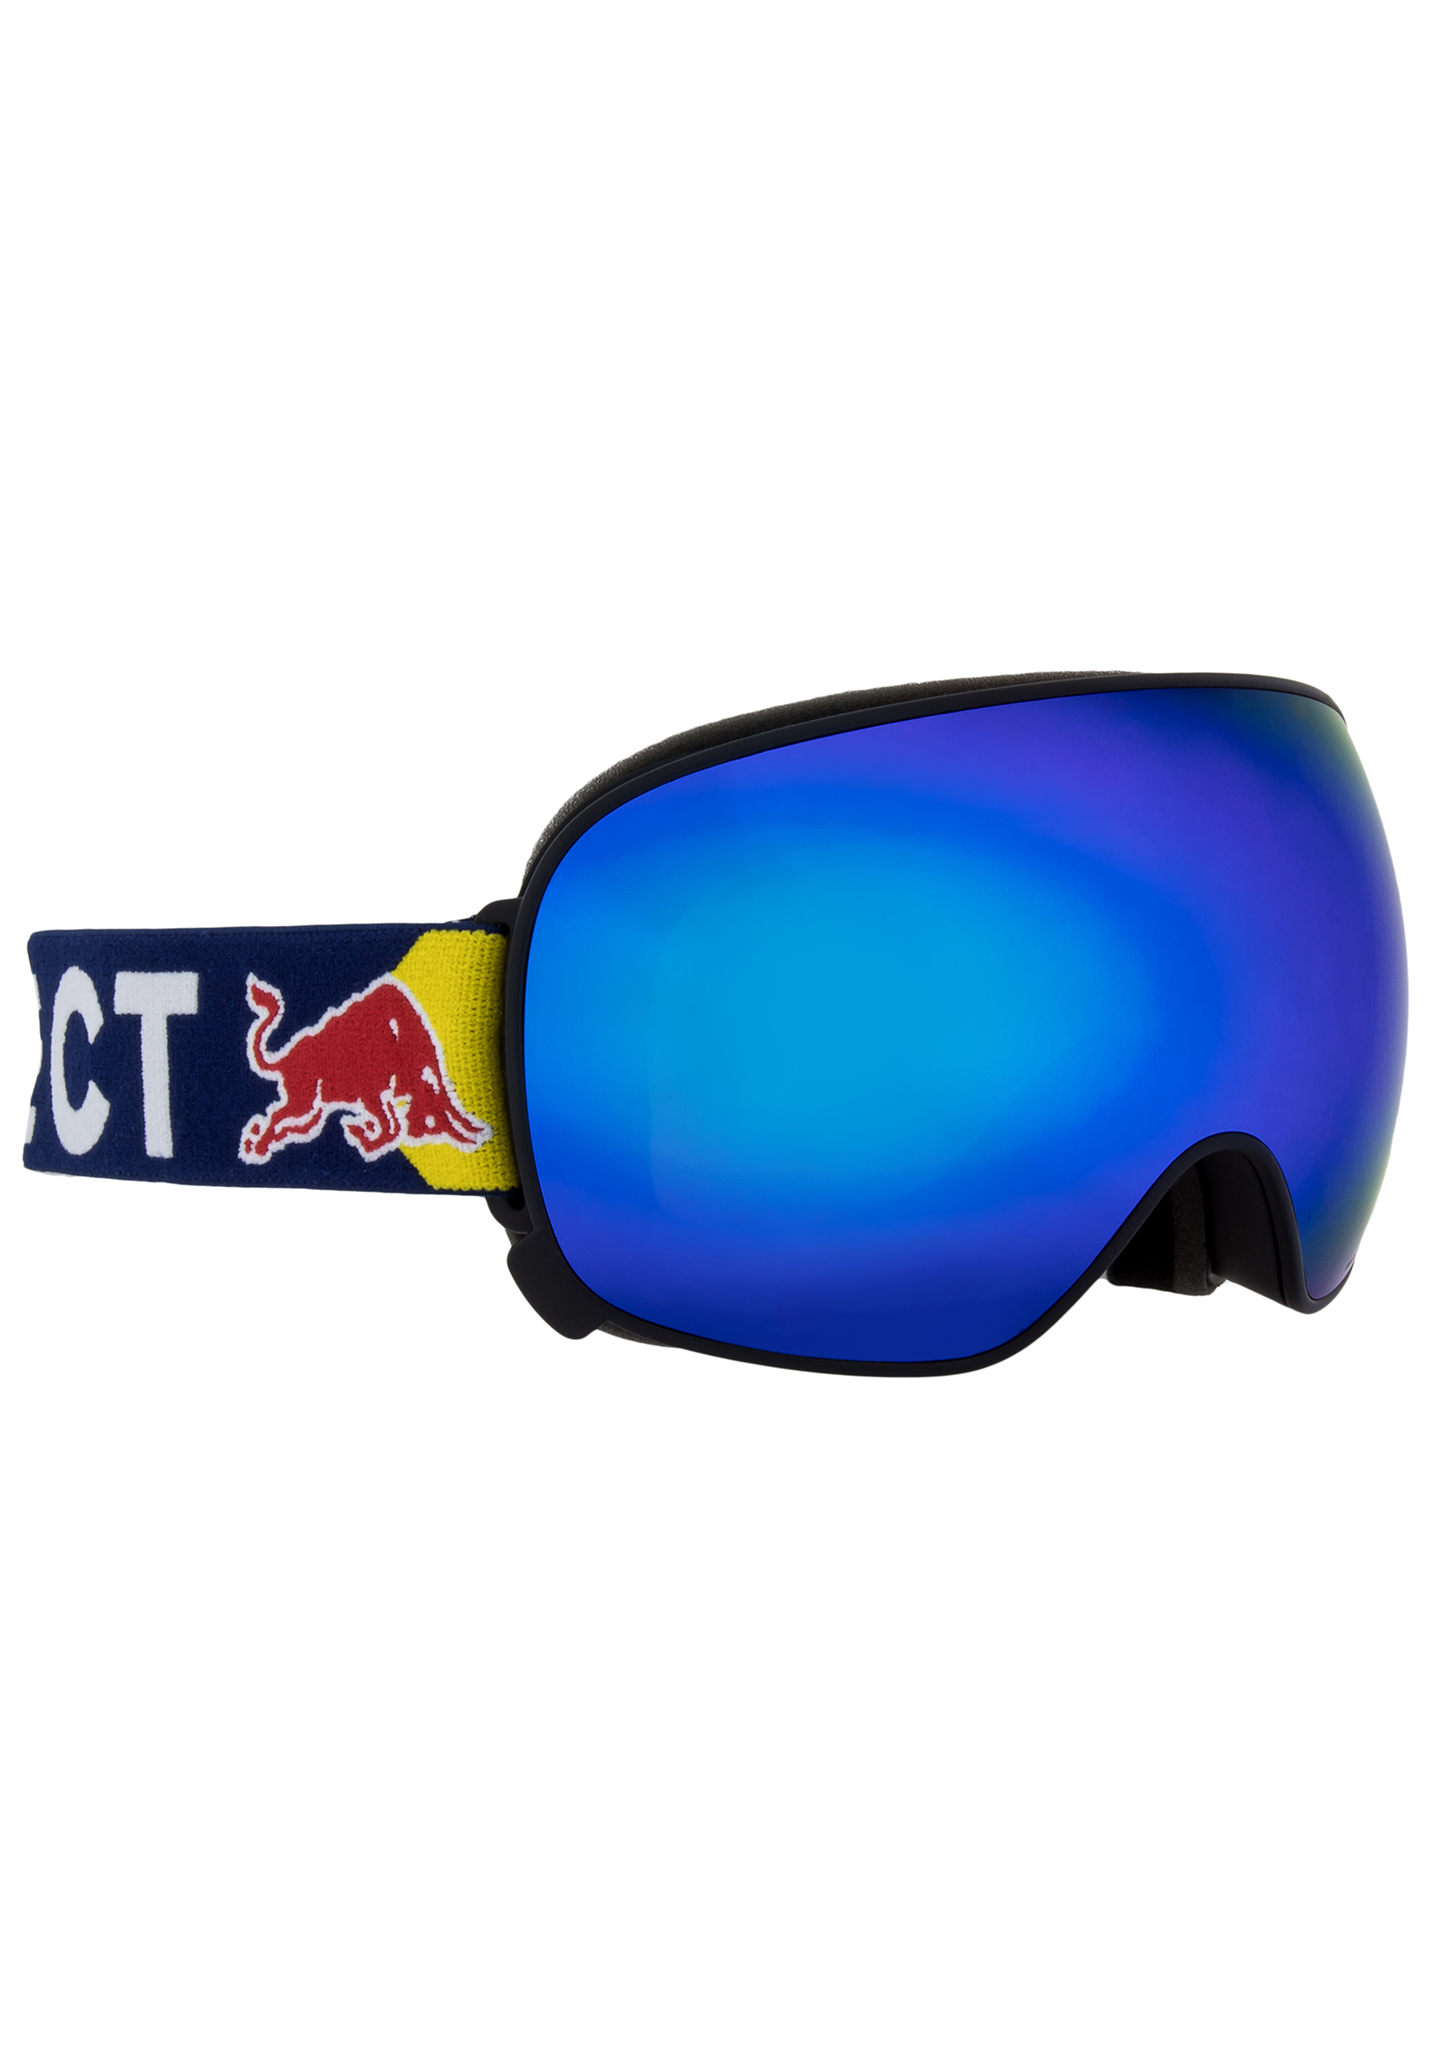 Red Bull SPECT Eyewear Magnetron Snowboardbrillen schwarz/blauer schnee - rauch mit blauem spiegel kat. s One Size